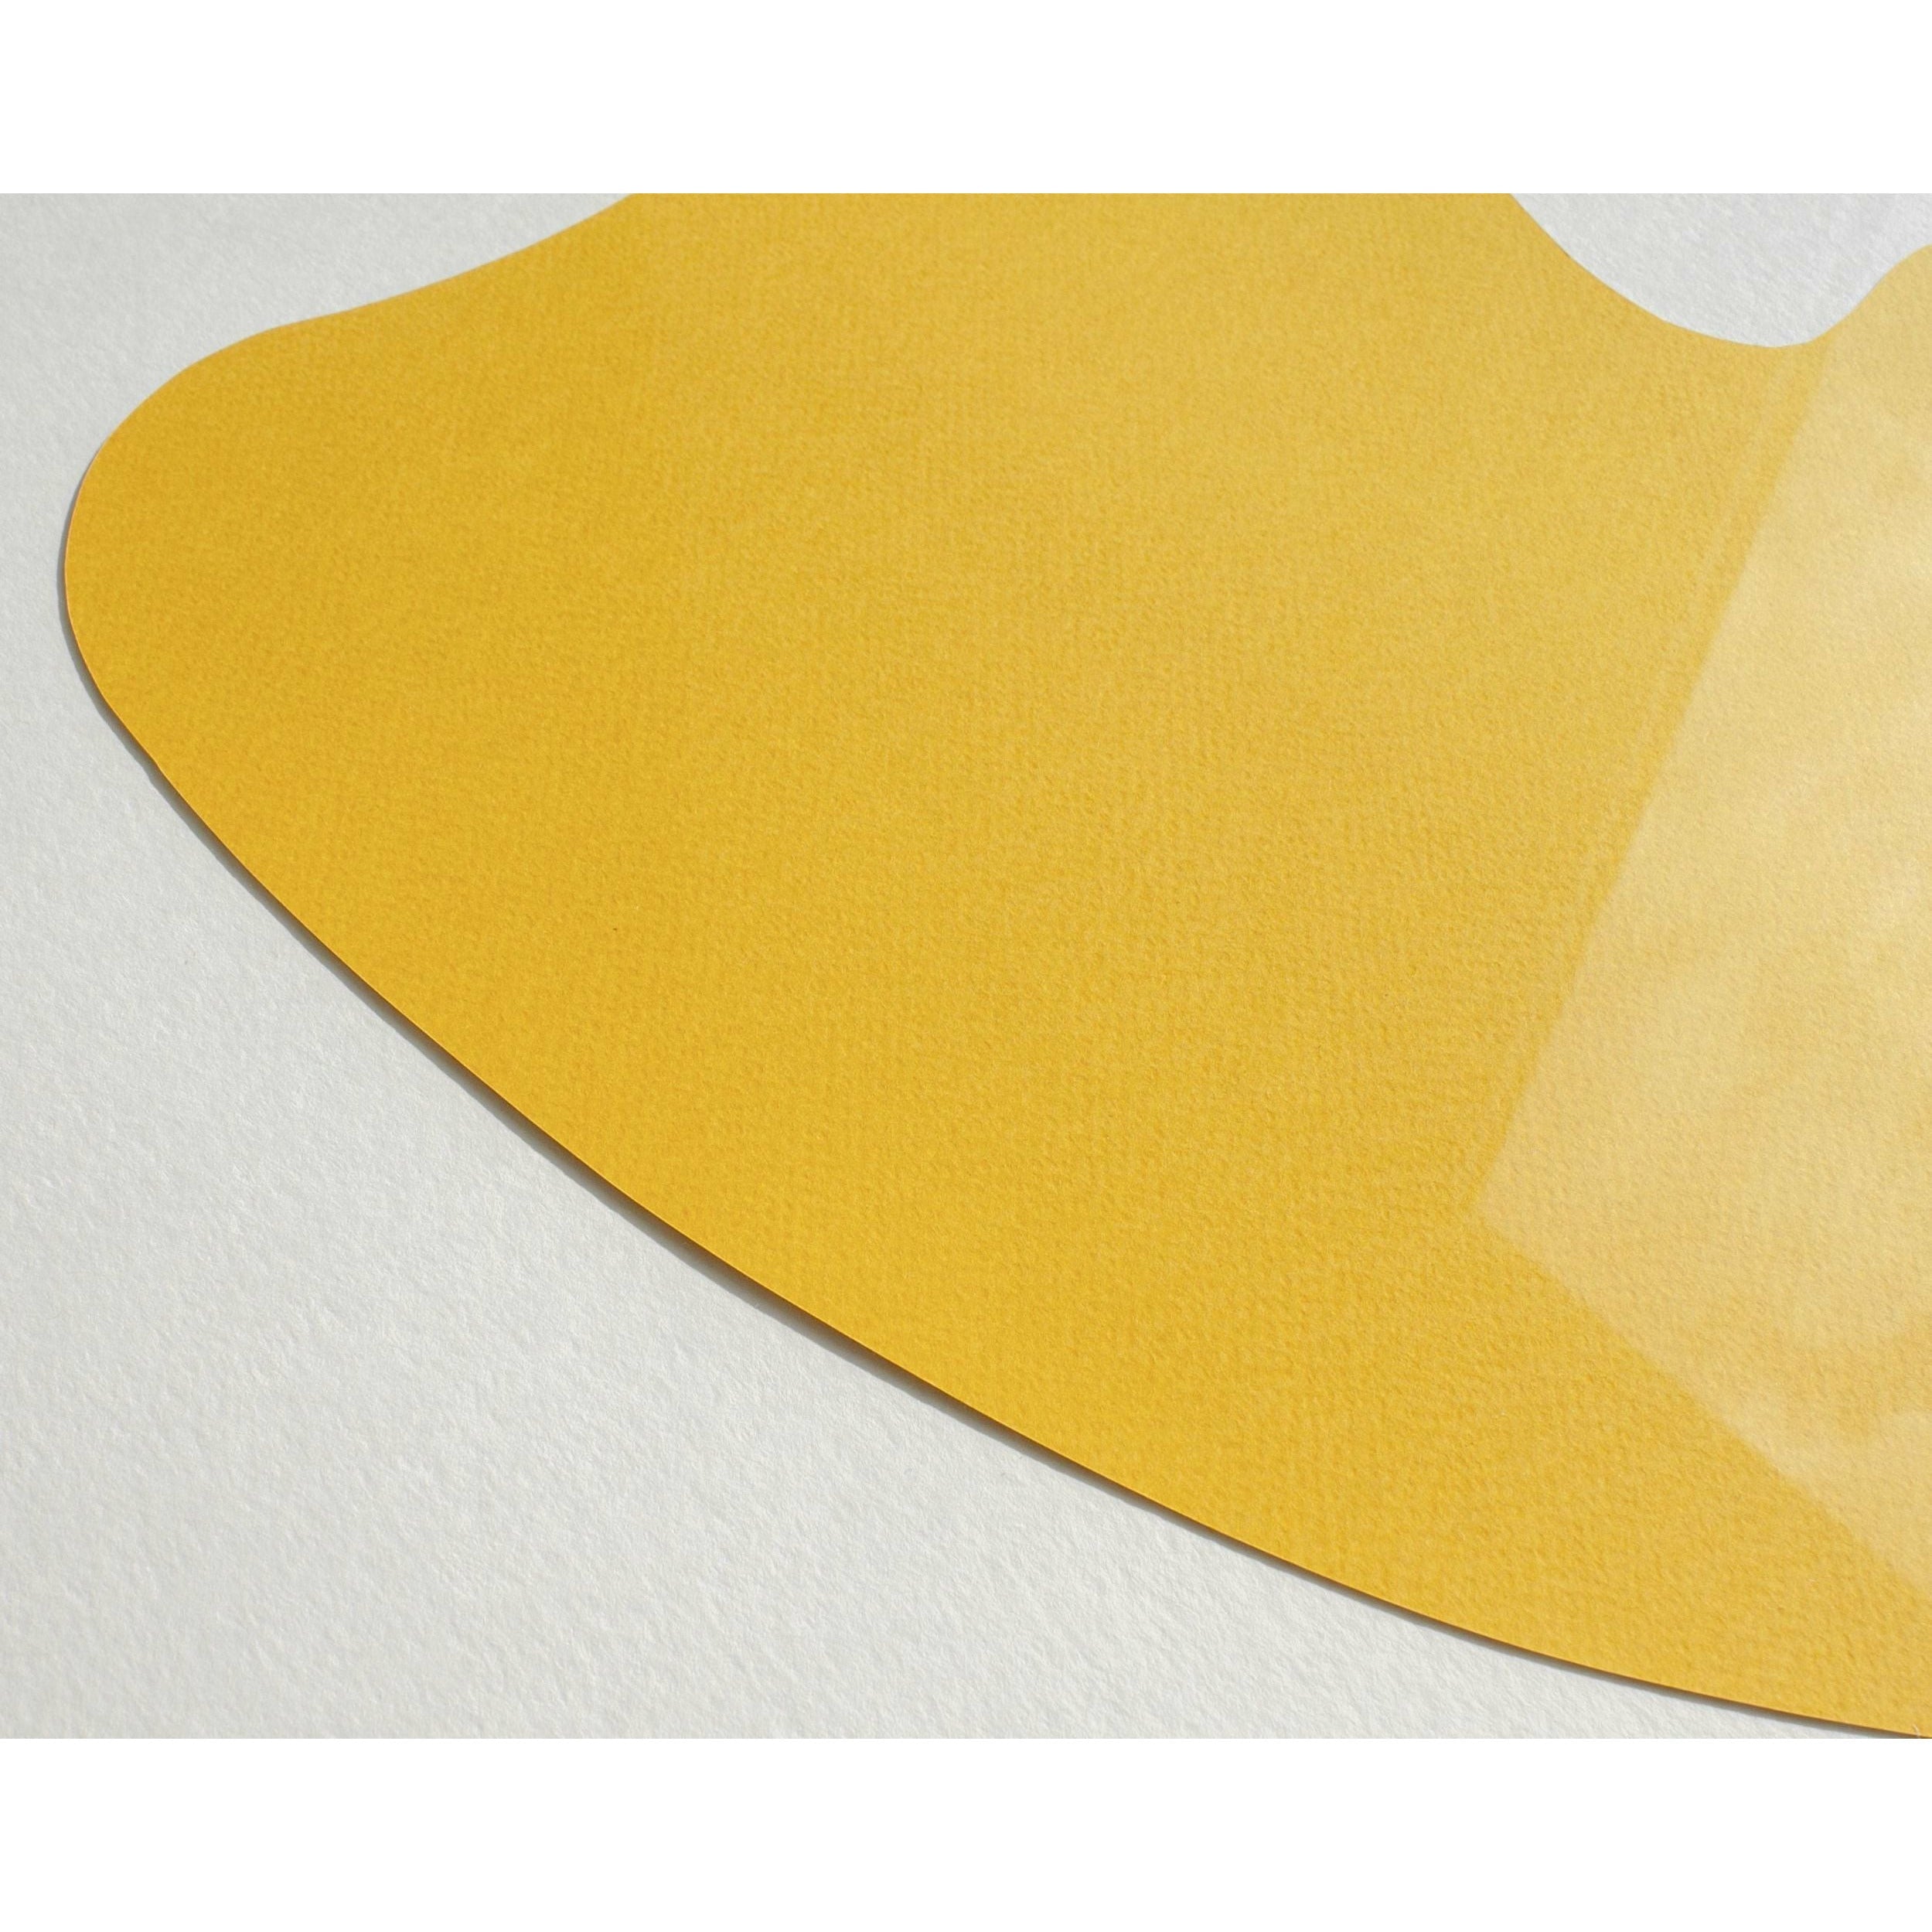 Plakat klipu z papieru do jajka, rama wykonana z jasnego drewna A5, różowe tło